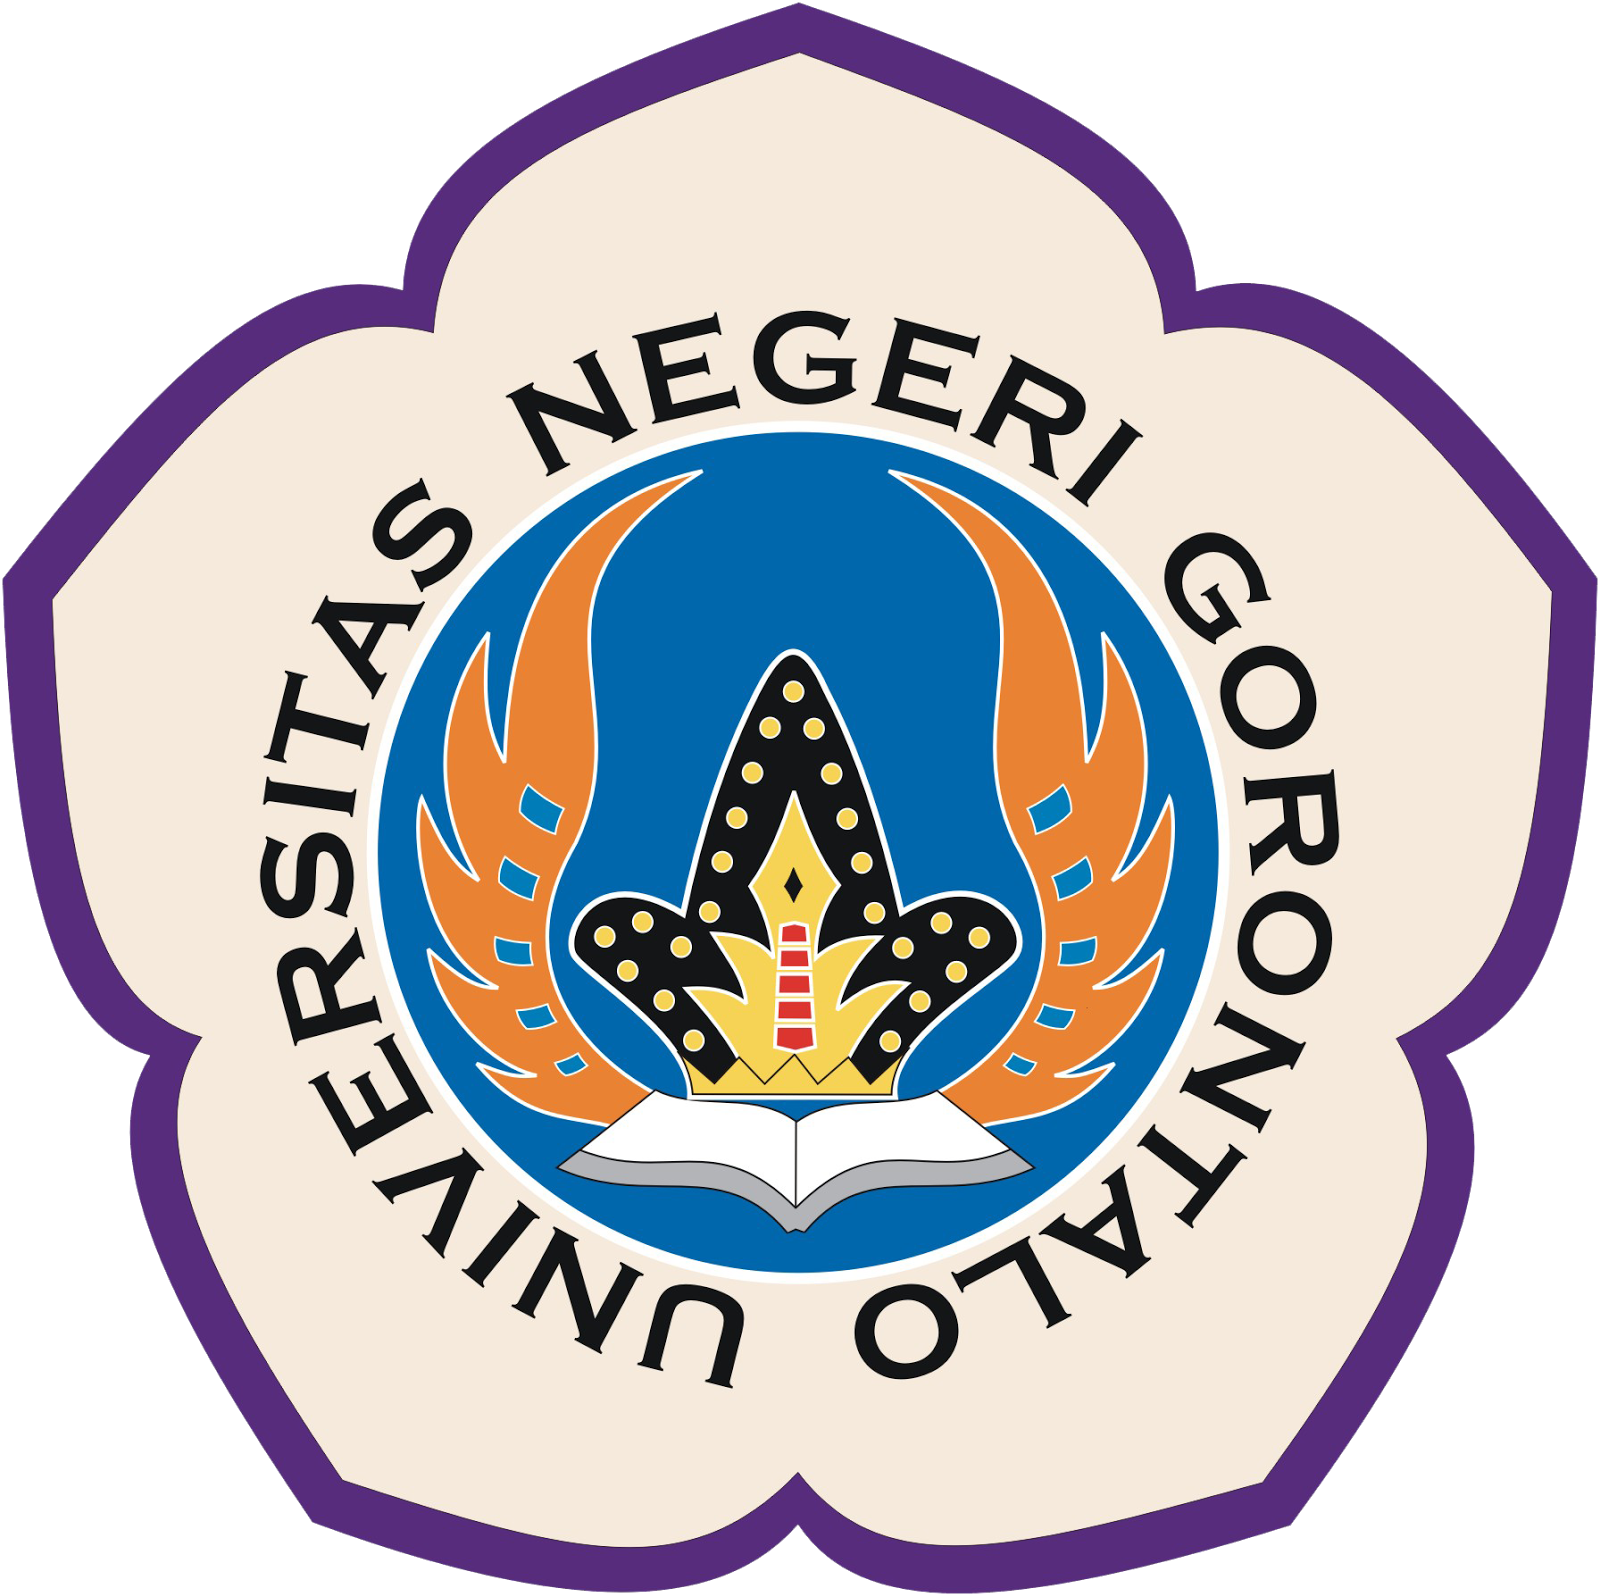 Gambar Logo Universitas Negeri Gorontalo - Koleksi Gambar HD